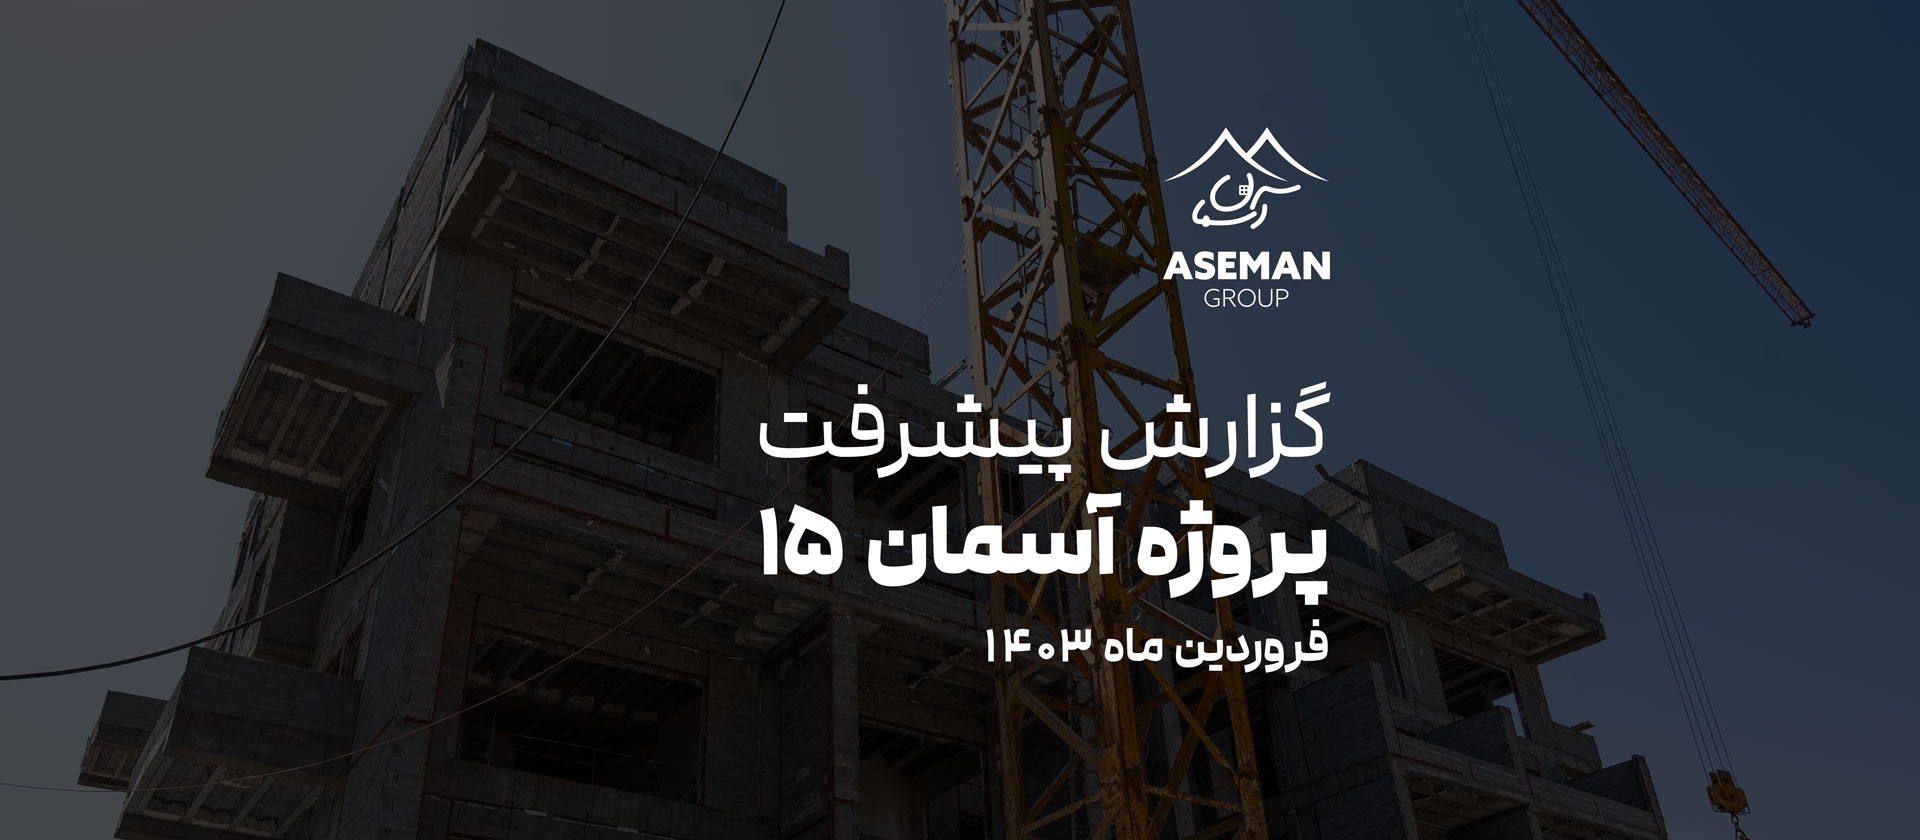 گزارش پیشرفت پروژه ساختمانی آسمان 15 واقع در کوی مهر مهرشهر کرج